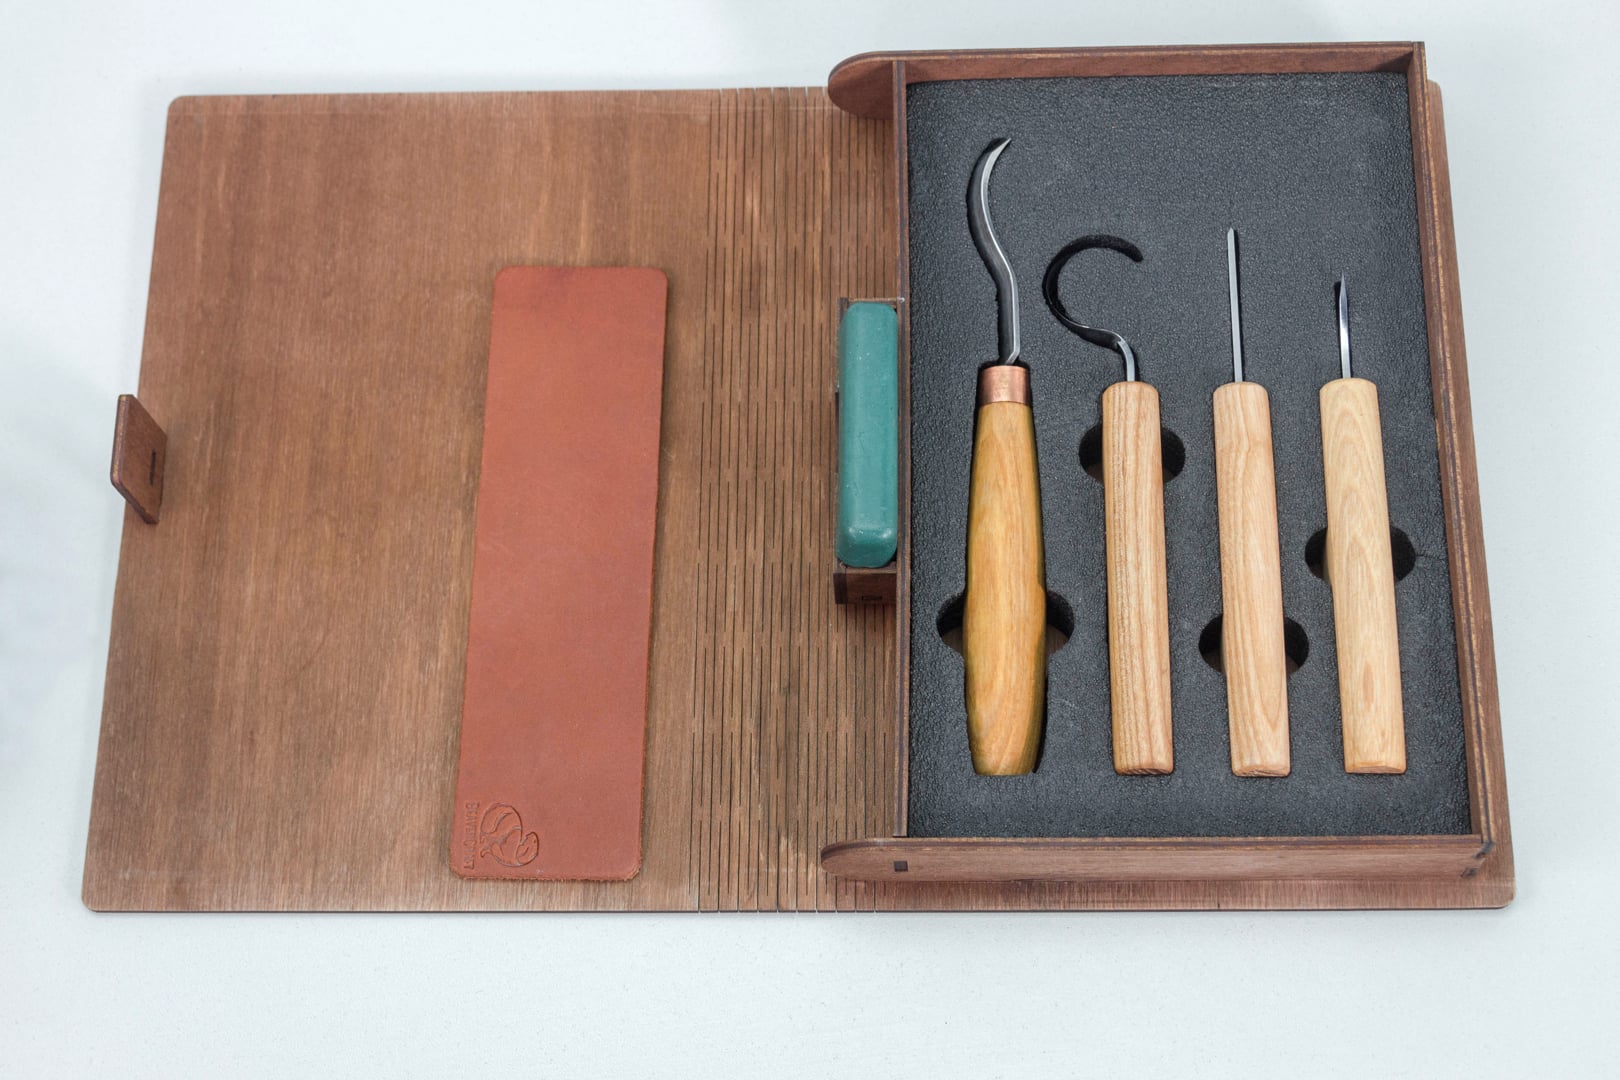 S19L Buch – Löffelschnitzset mit 4 Werkzeugen in einem Bücherregal (Linkshänder)